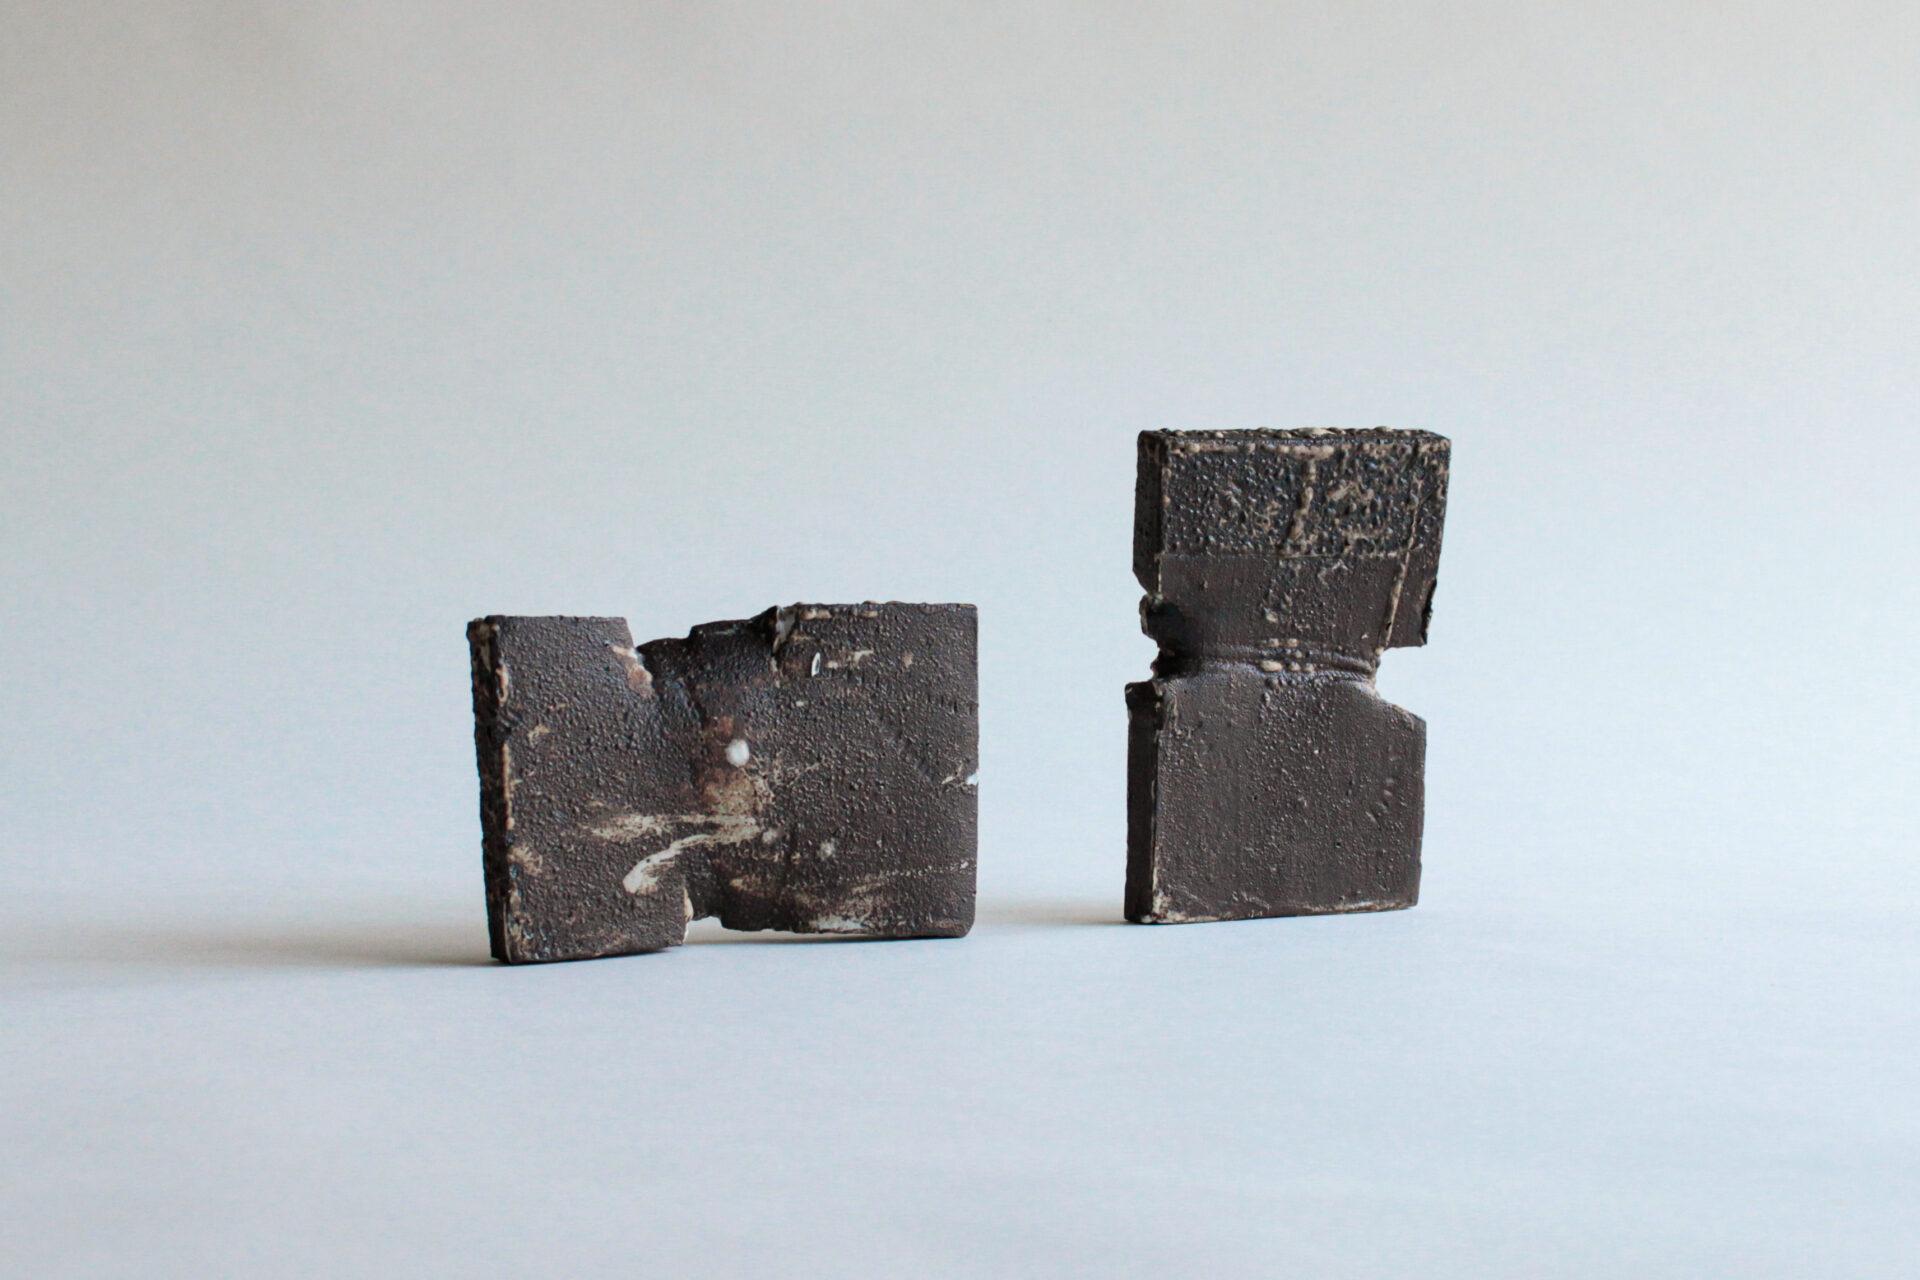 Tension 01 ist eine Erkundung von Schokolade und schwarzen Tonplatten, relativen Materialien mit relativer Masse. Diese massiven schokoladenfarbenen Tonplatten repräsentieren die sich wiederholende Natur von Widerstandsfähigkeit und Ausdauer, von